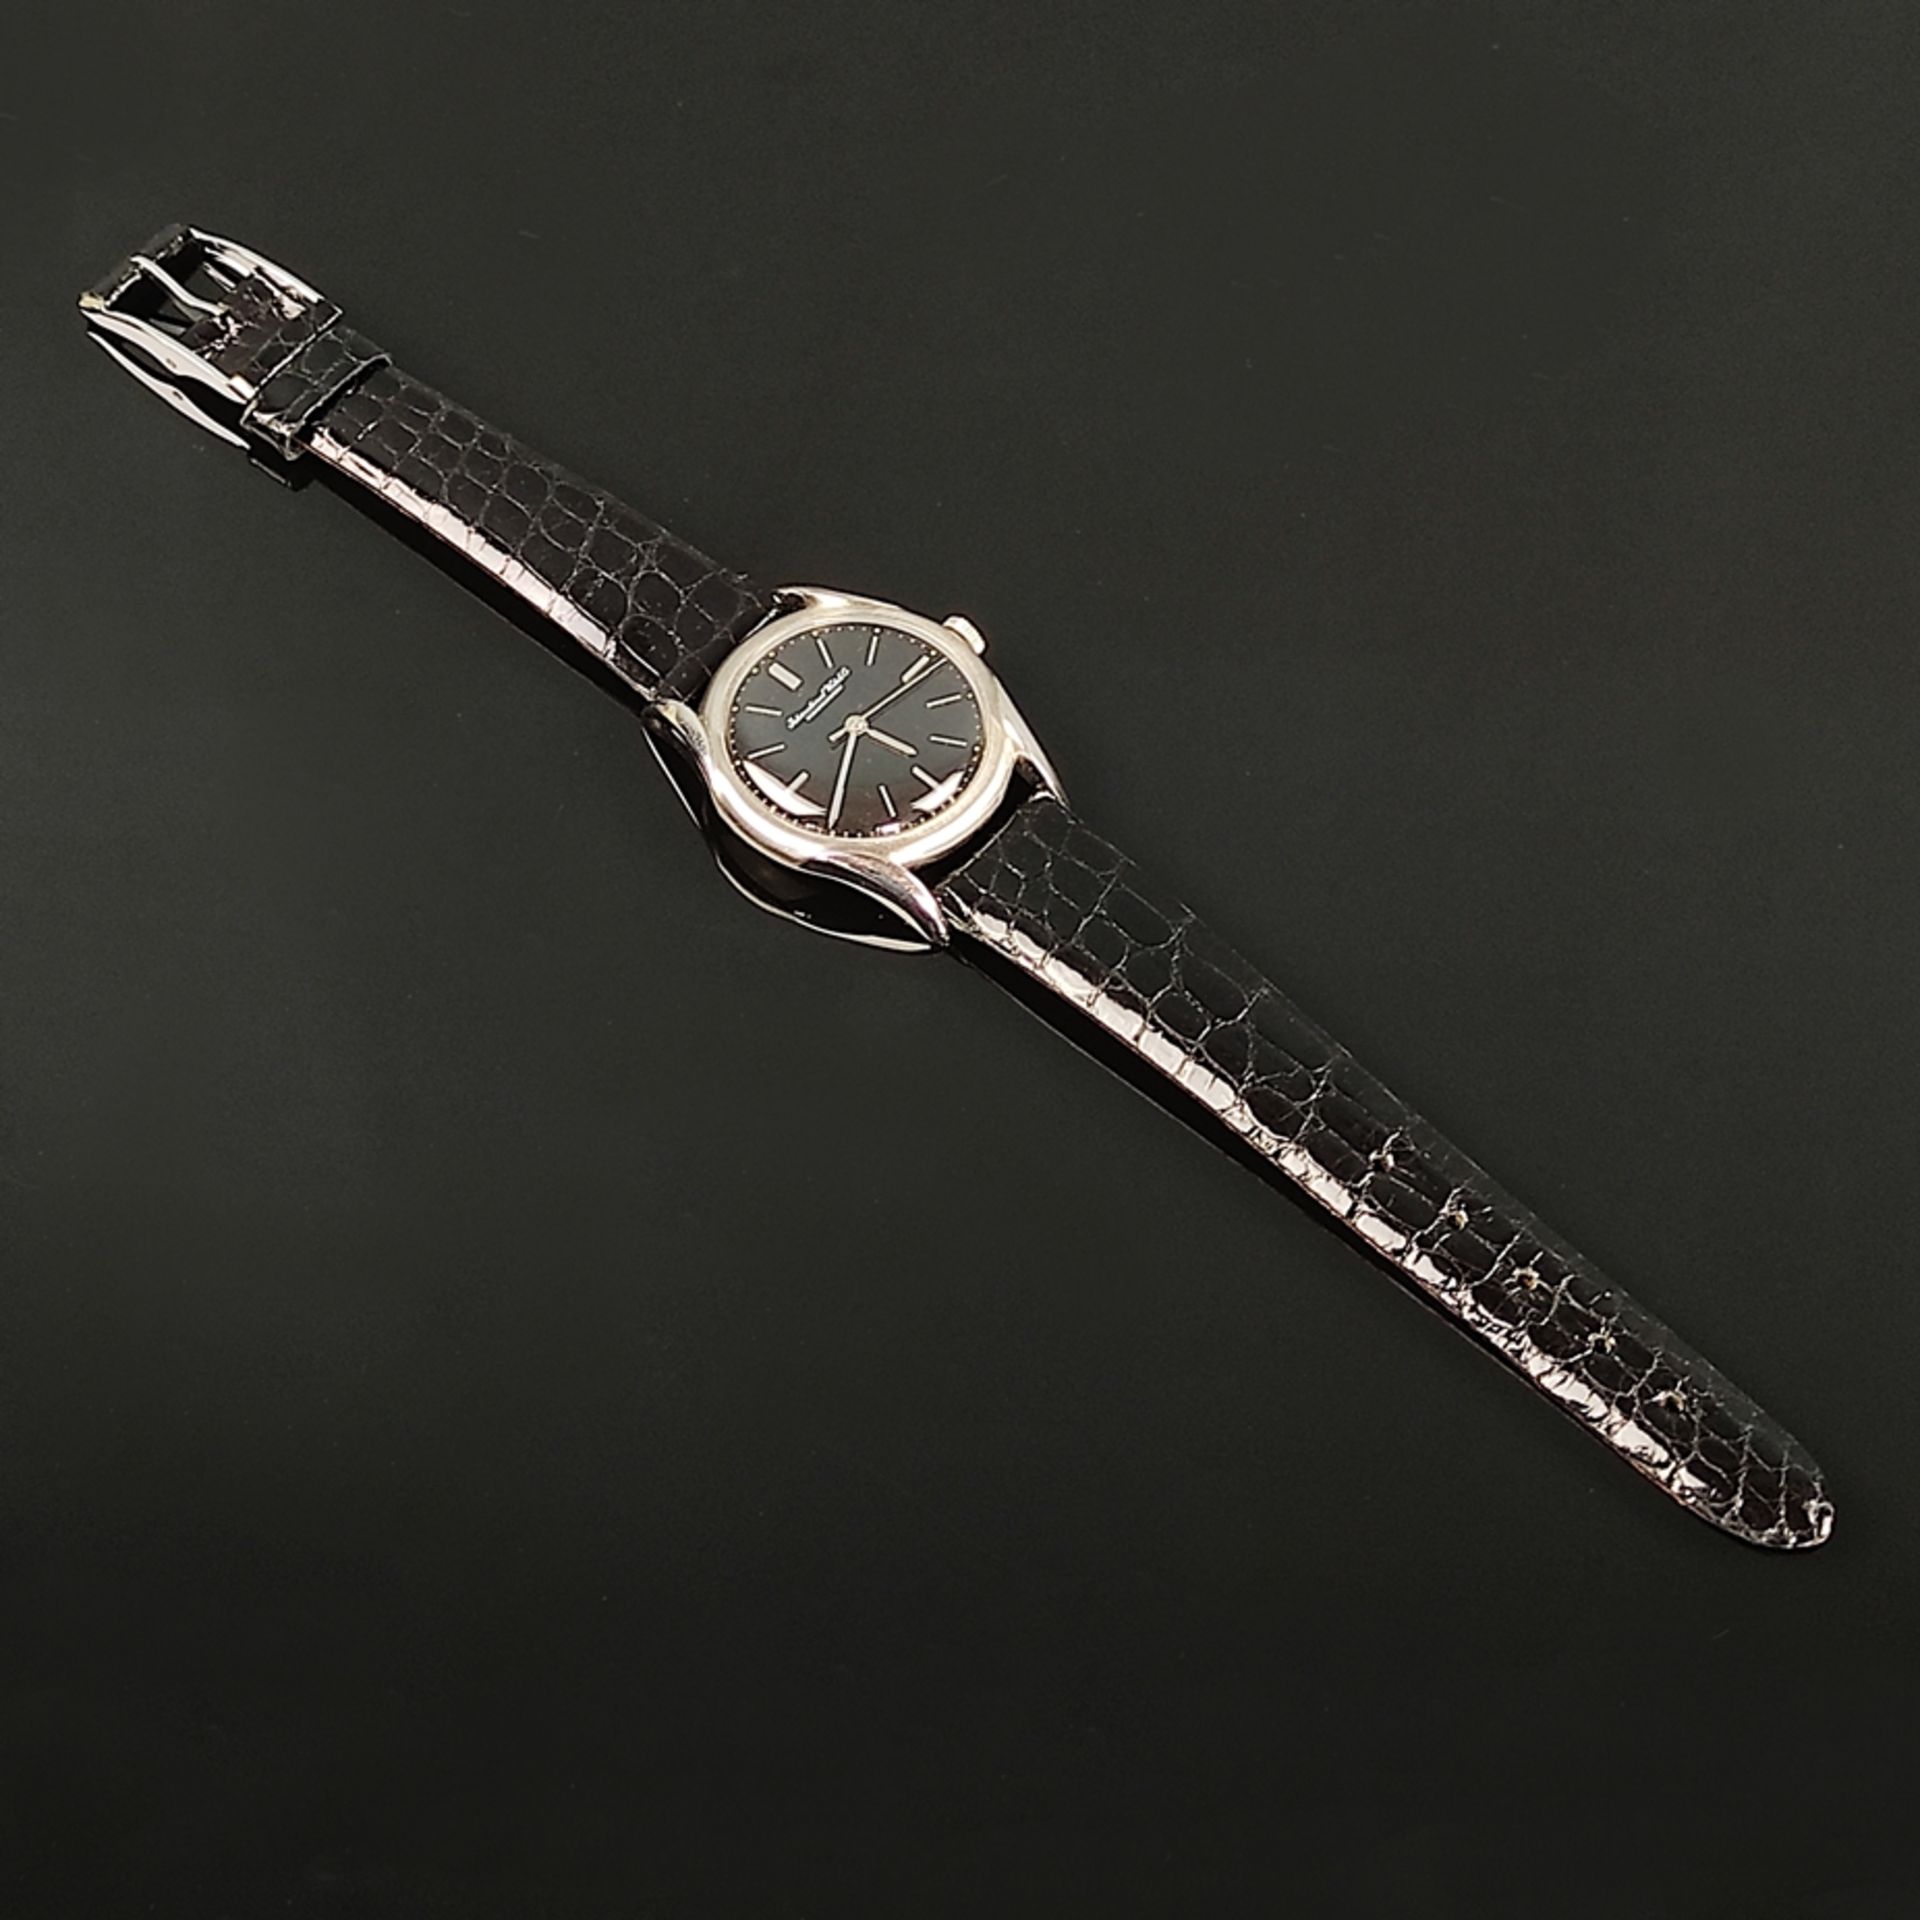 Armbanduhr, IWC Schaffhausen, rundes Ziffernblatt mit Indizes, Durchmesser (mit Krone) 35mm, Handau - Bild 3 aus 3